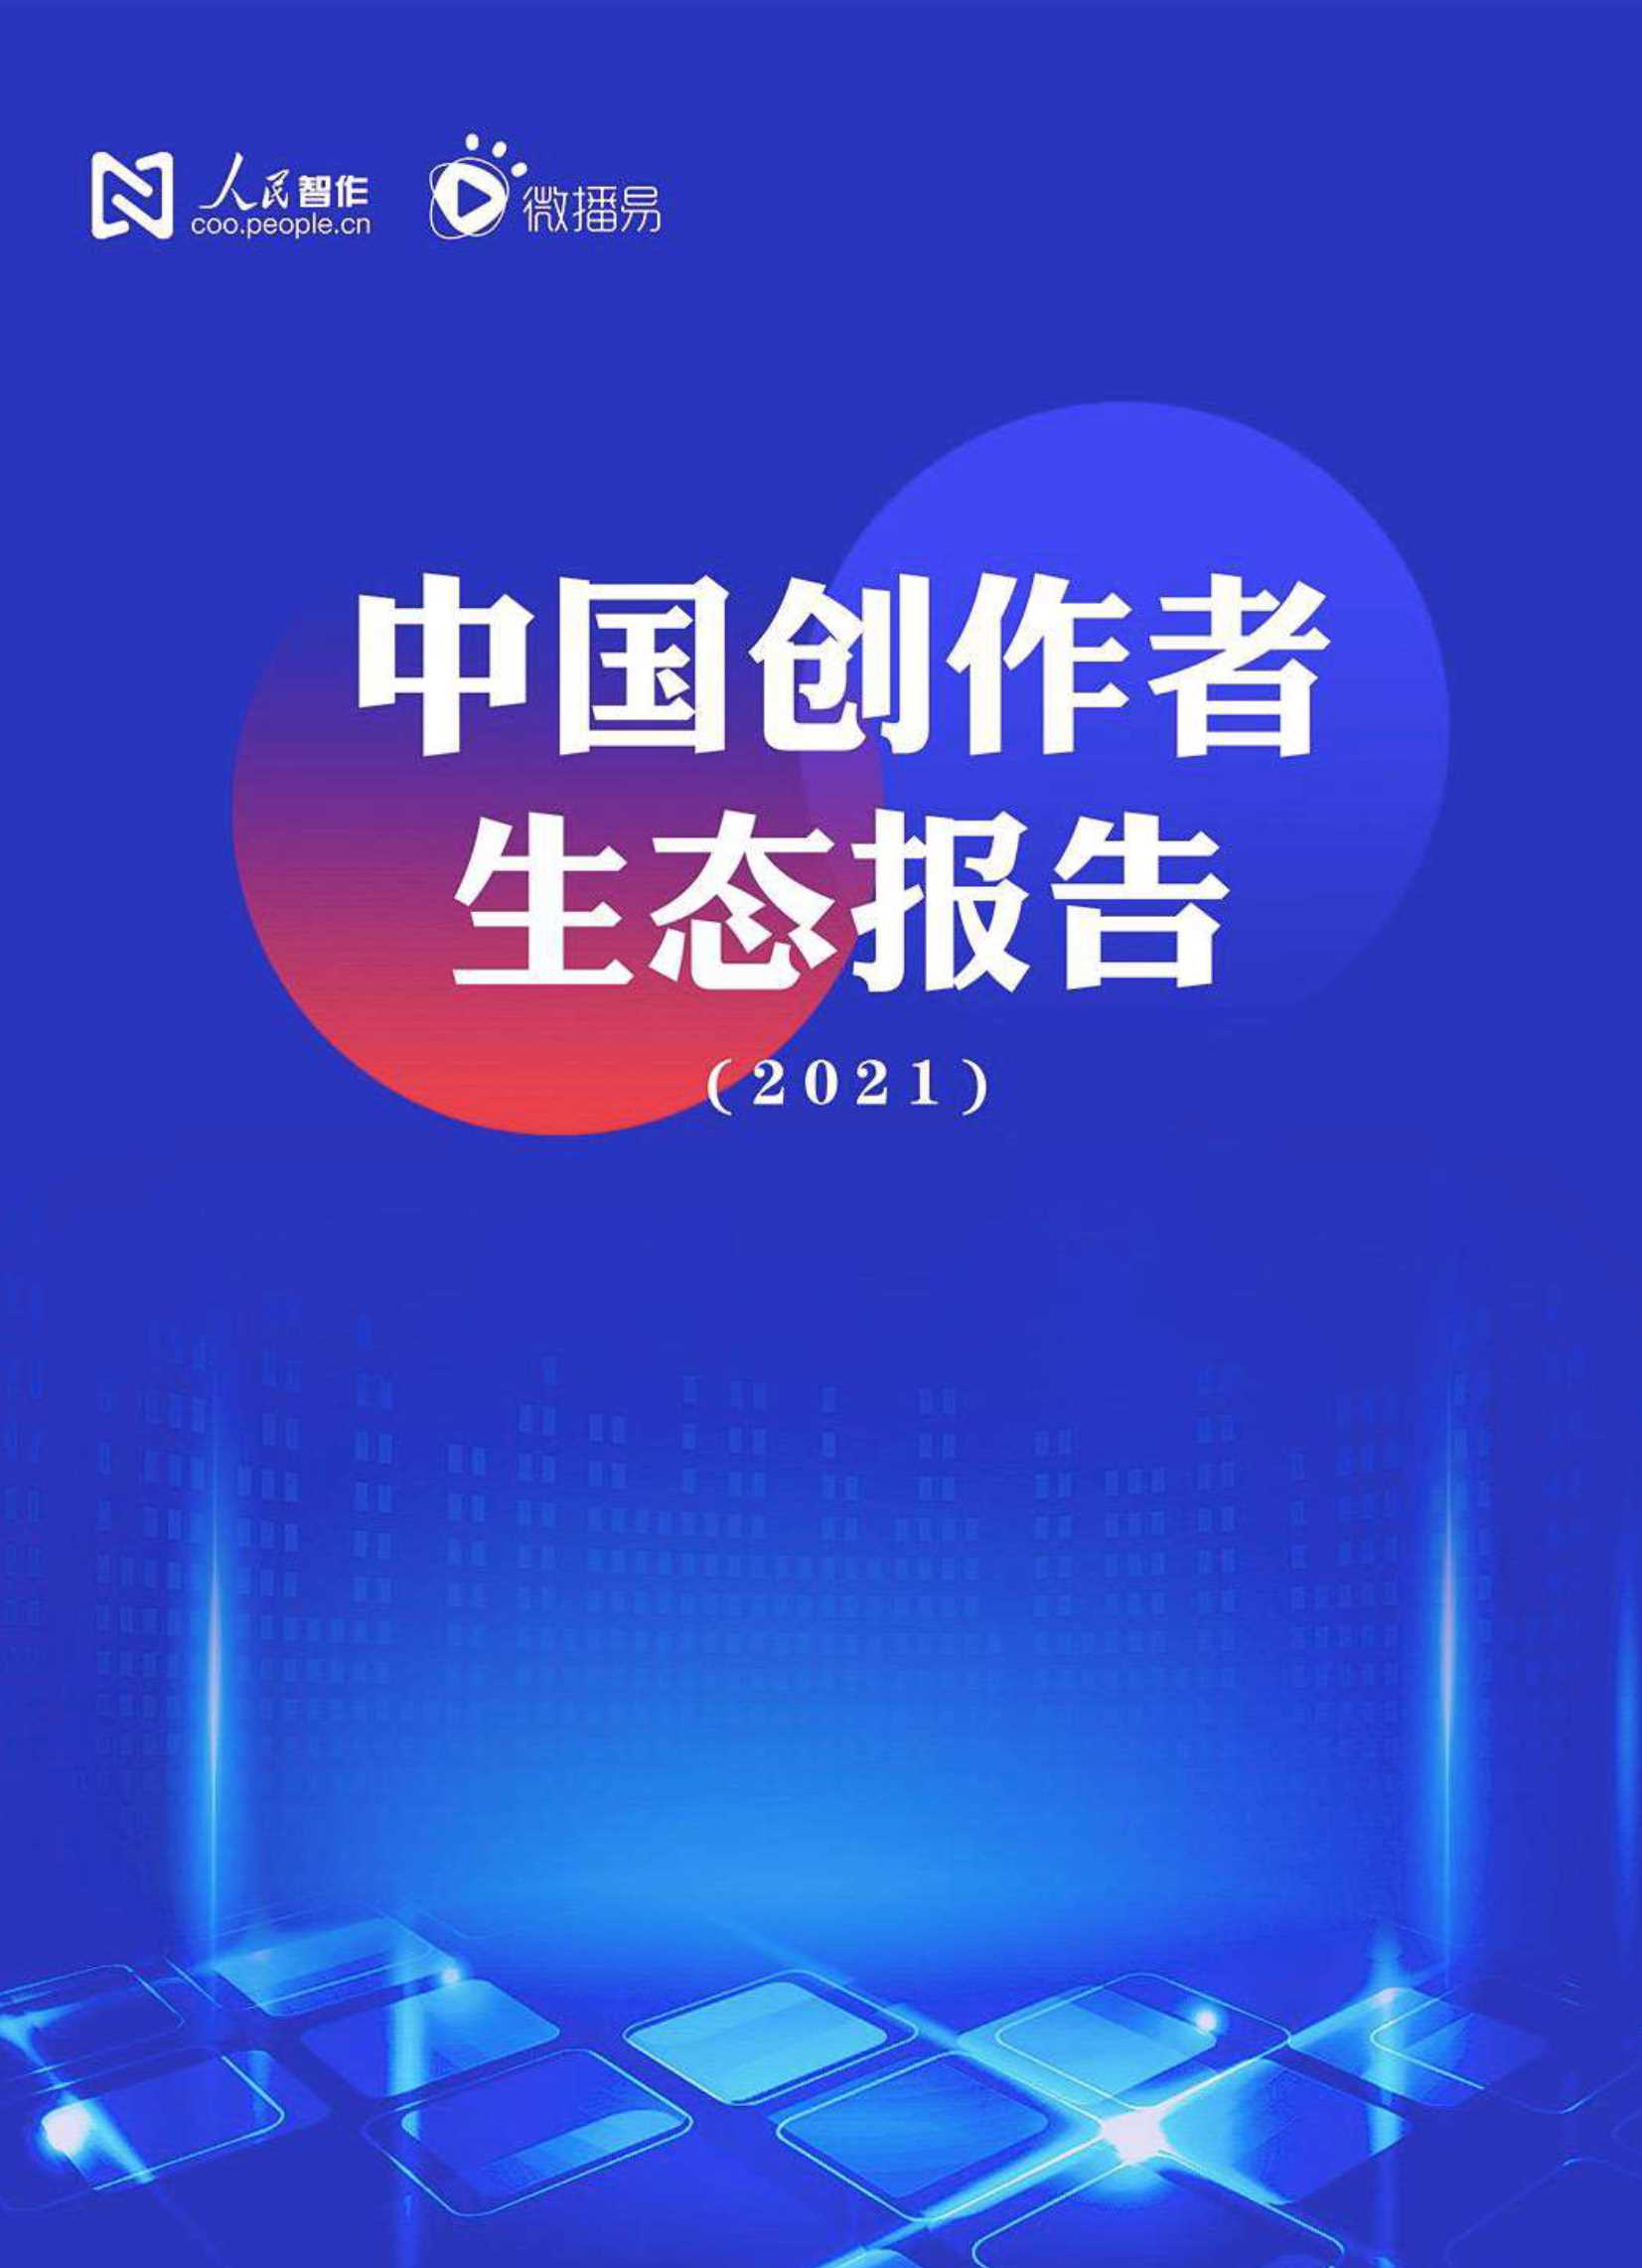 人民智作&微播易-中国创作者生态报告2021-2022.03-61页